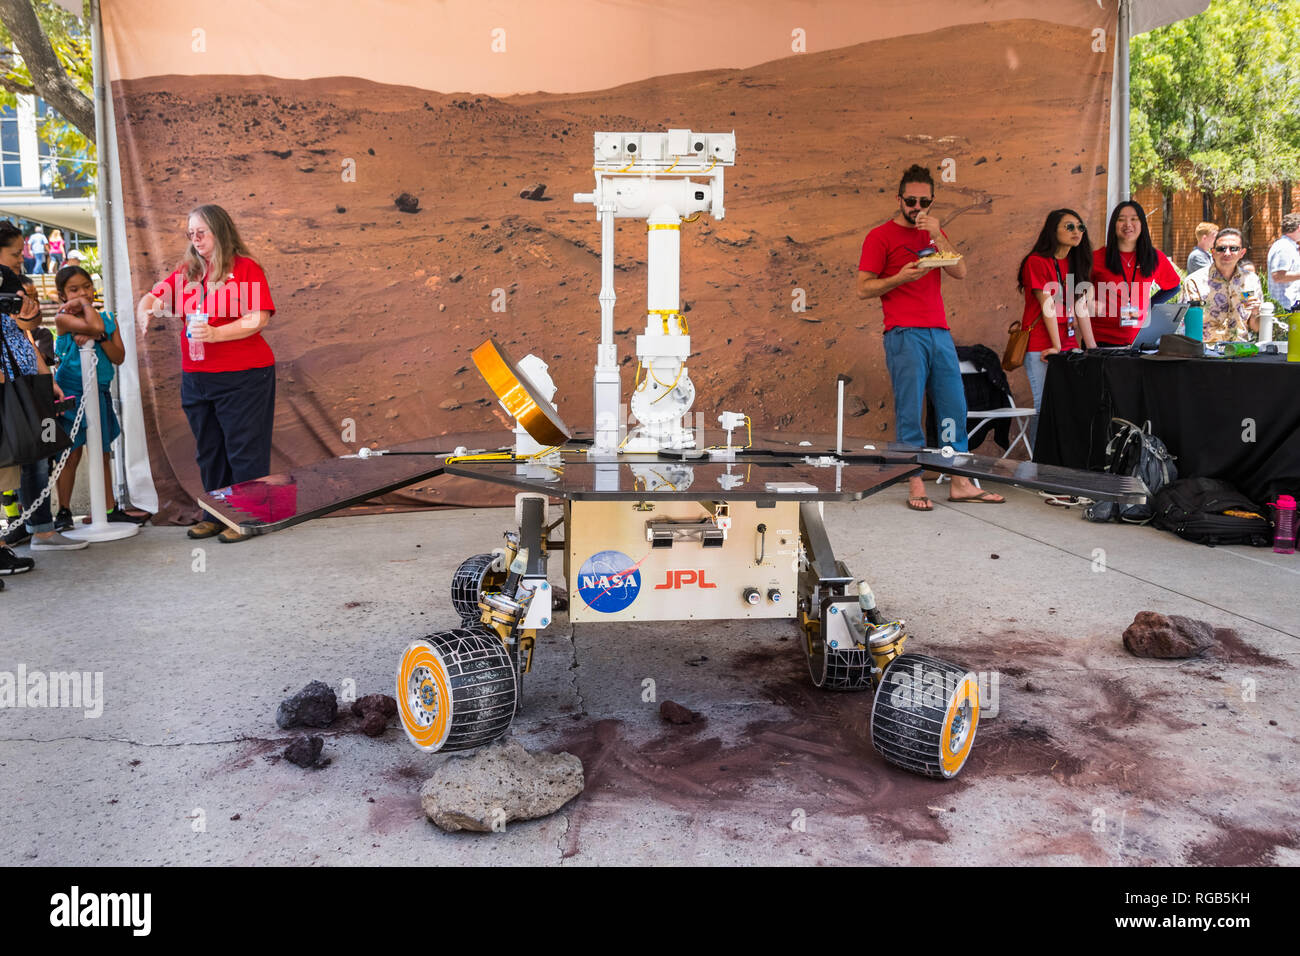 10 juin 2018 La Canada Flintridge / CA / USA - Mars Exploration Rover démontrant la manière de passer sur des obstacles, "un ticket pour explorer le JPL' event Banque D'Images